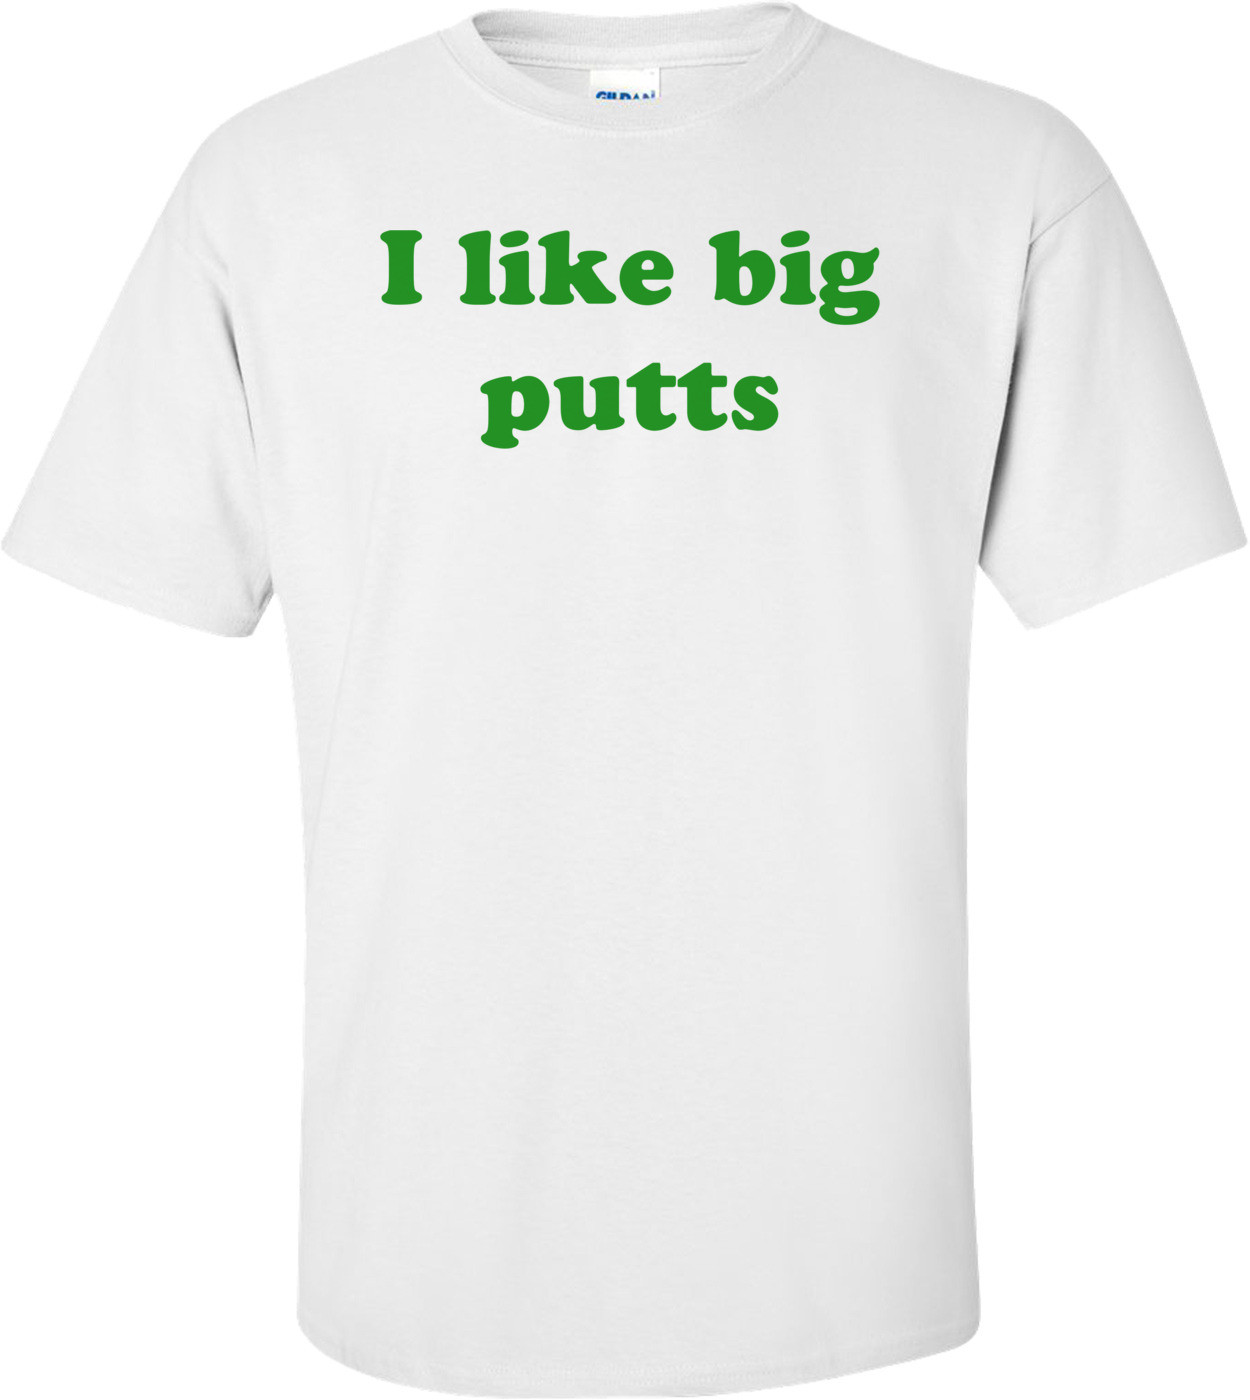 I like big putts T-Shirt